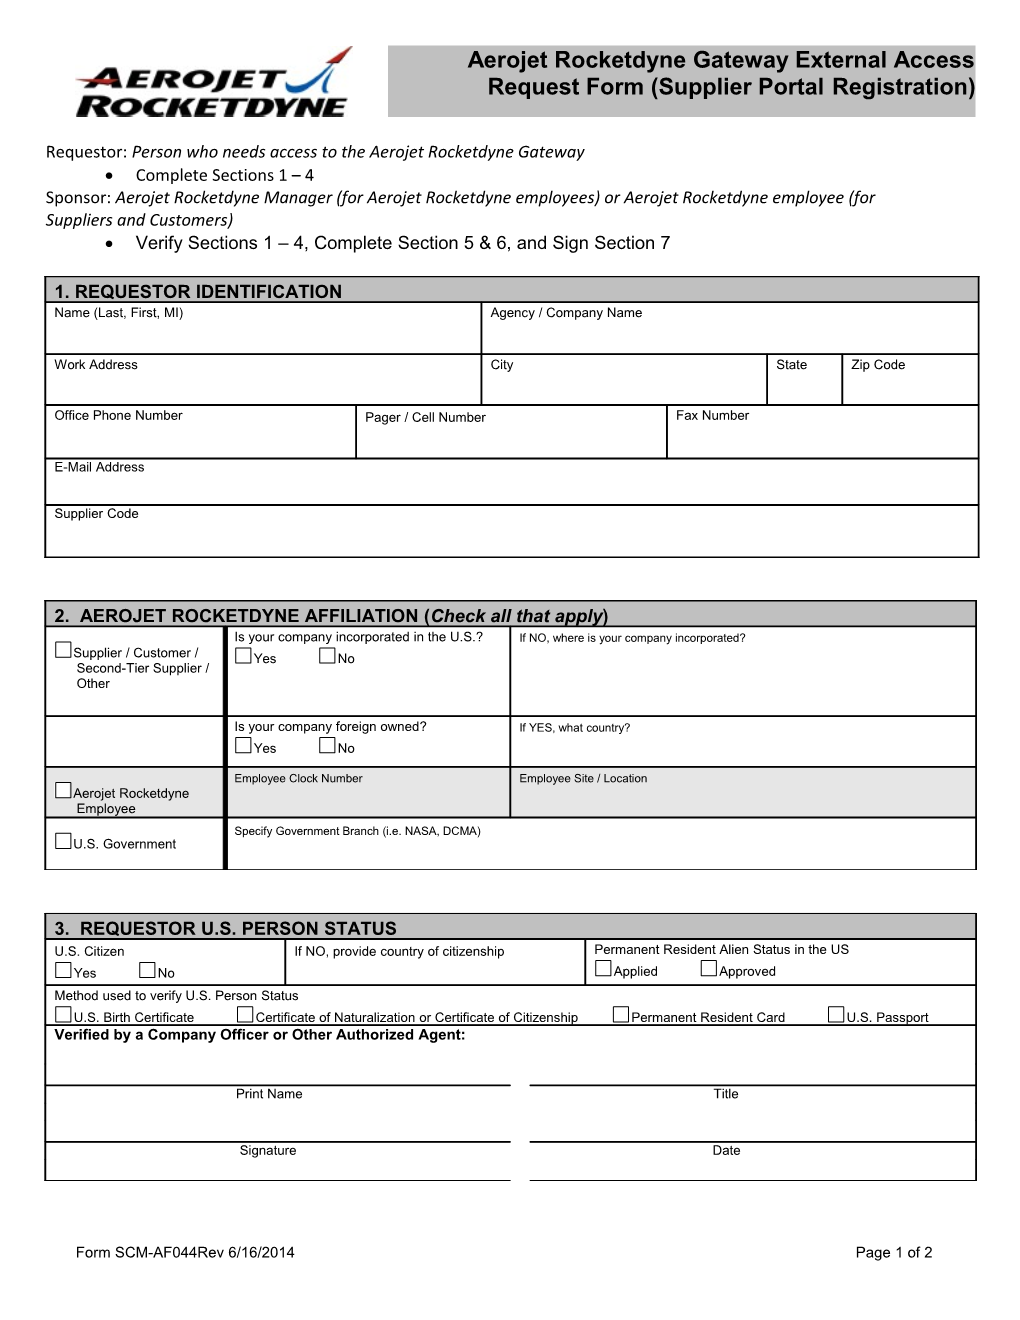 Form 5014-A, PWR Gateway External Access Request Form (Supplier Portal Registration)